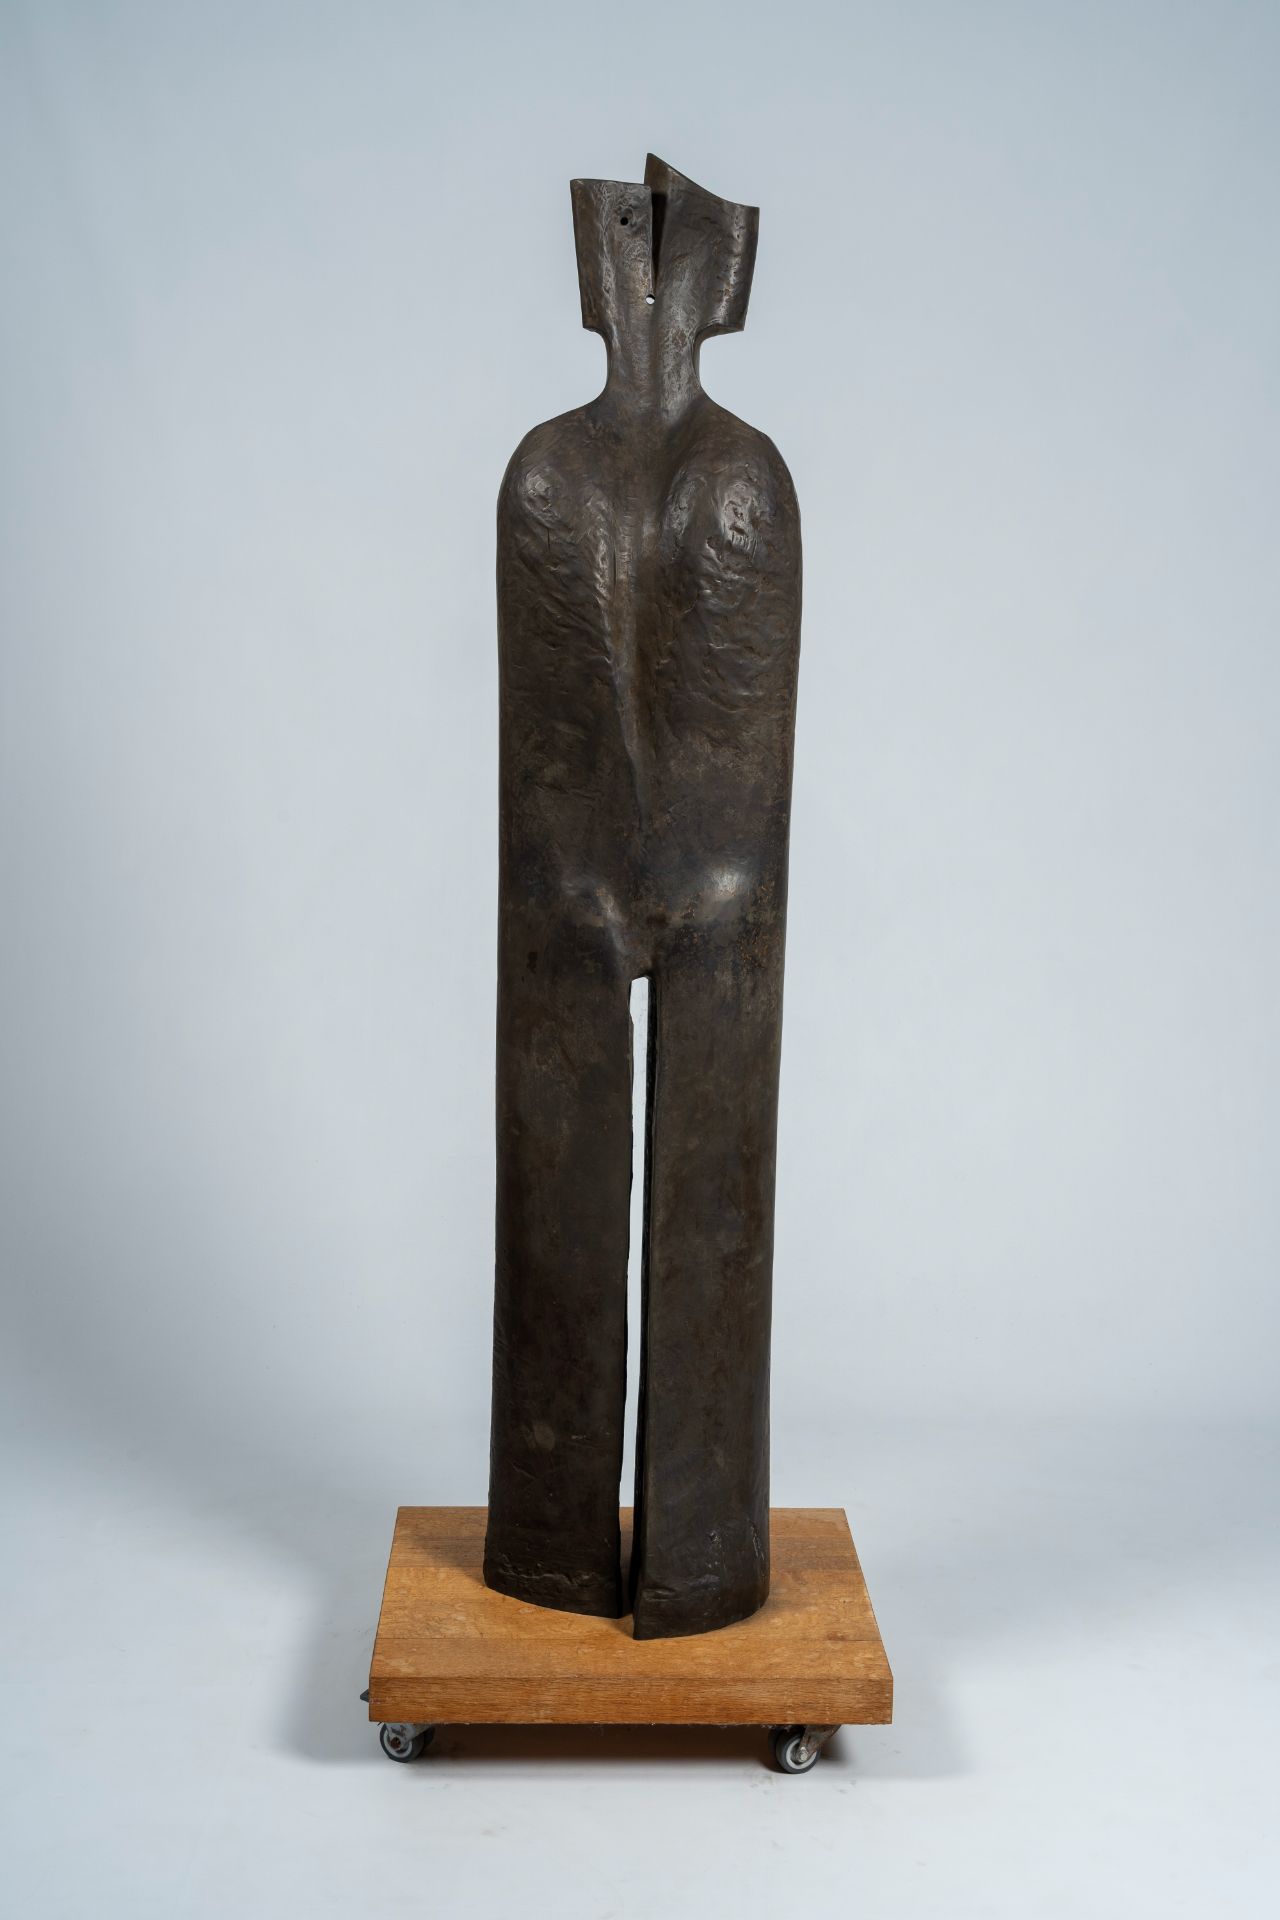 Jacques Tenenhaus (1947): 'The walking man', steel patinated bronze, foundry Landowski, ed. 1/8, dat - Image 5 of 9